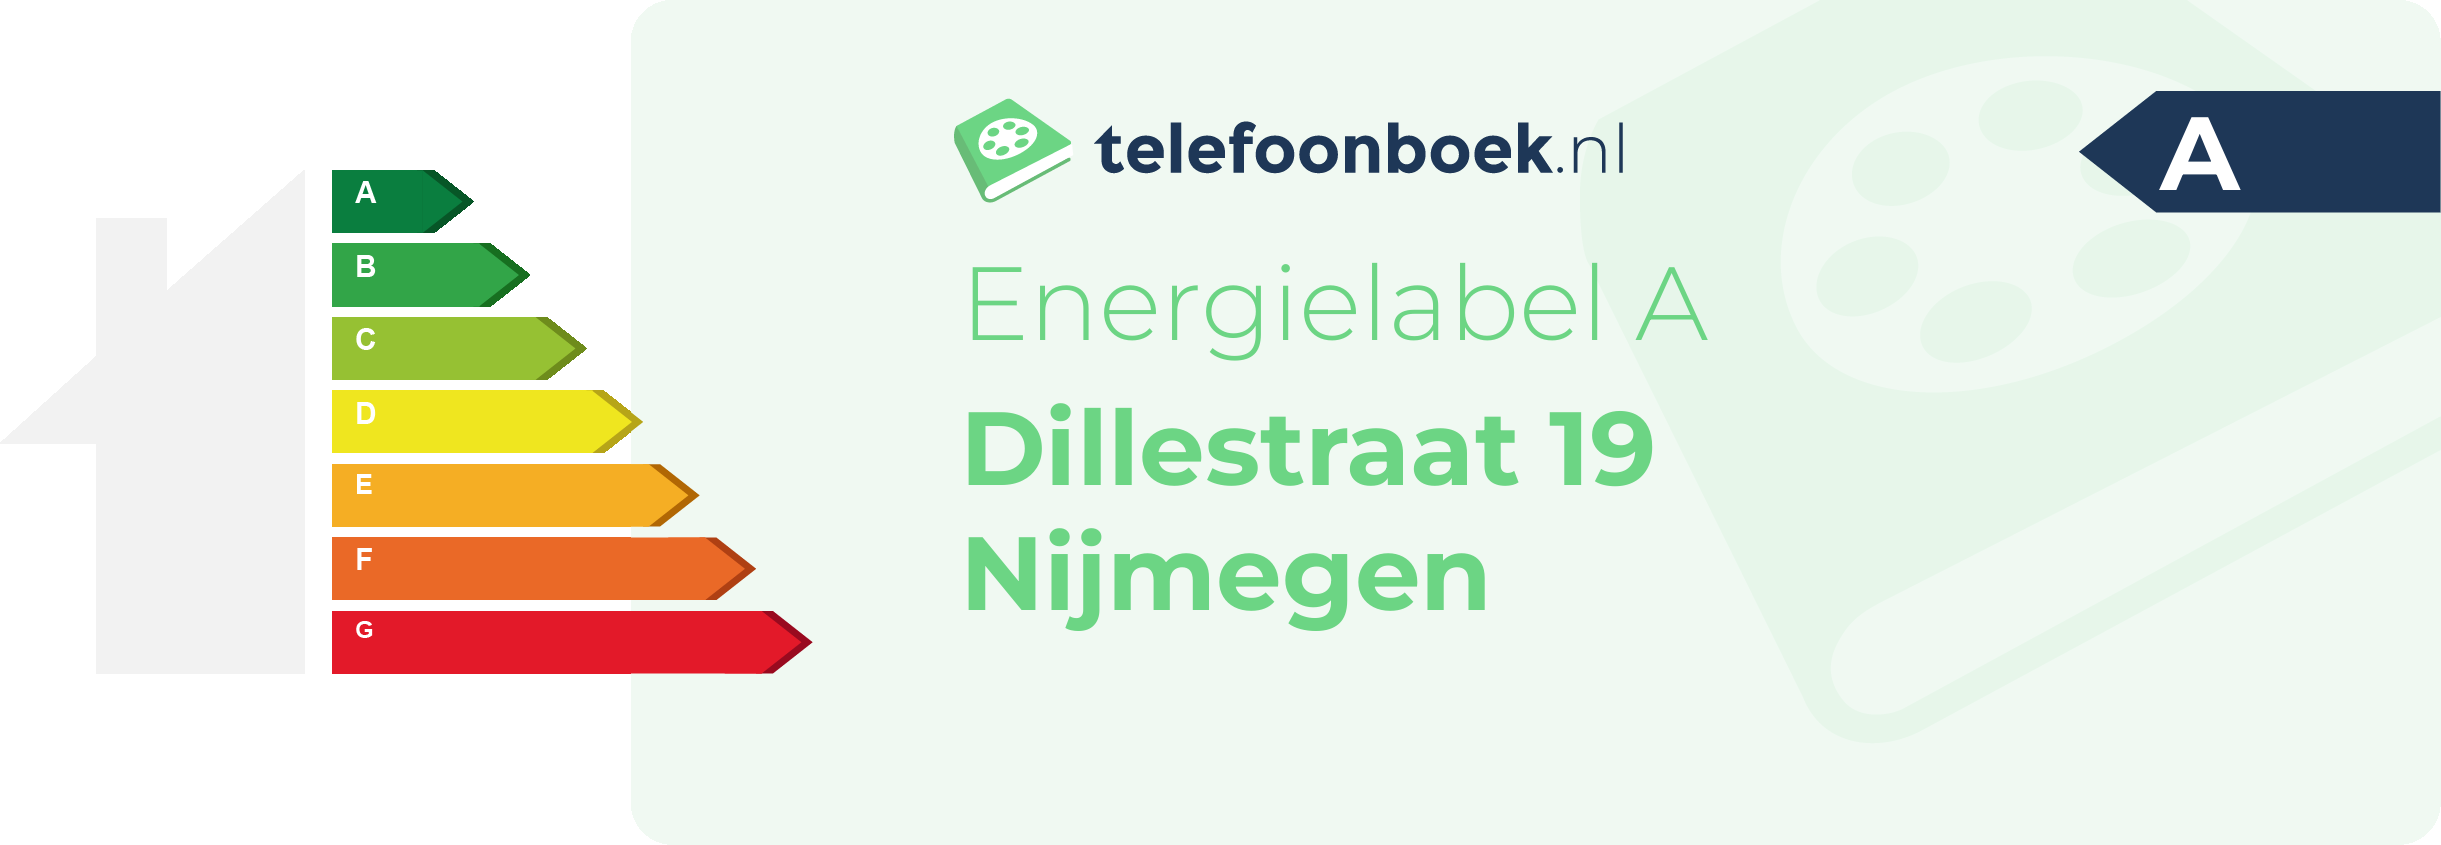 Energielabel Dillestraat 19 Nijmegen